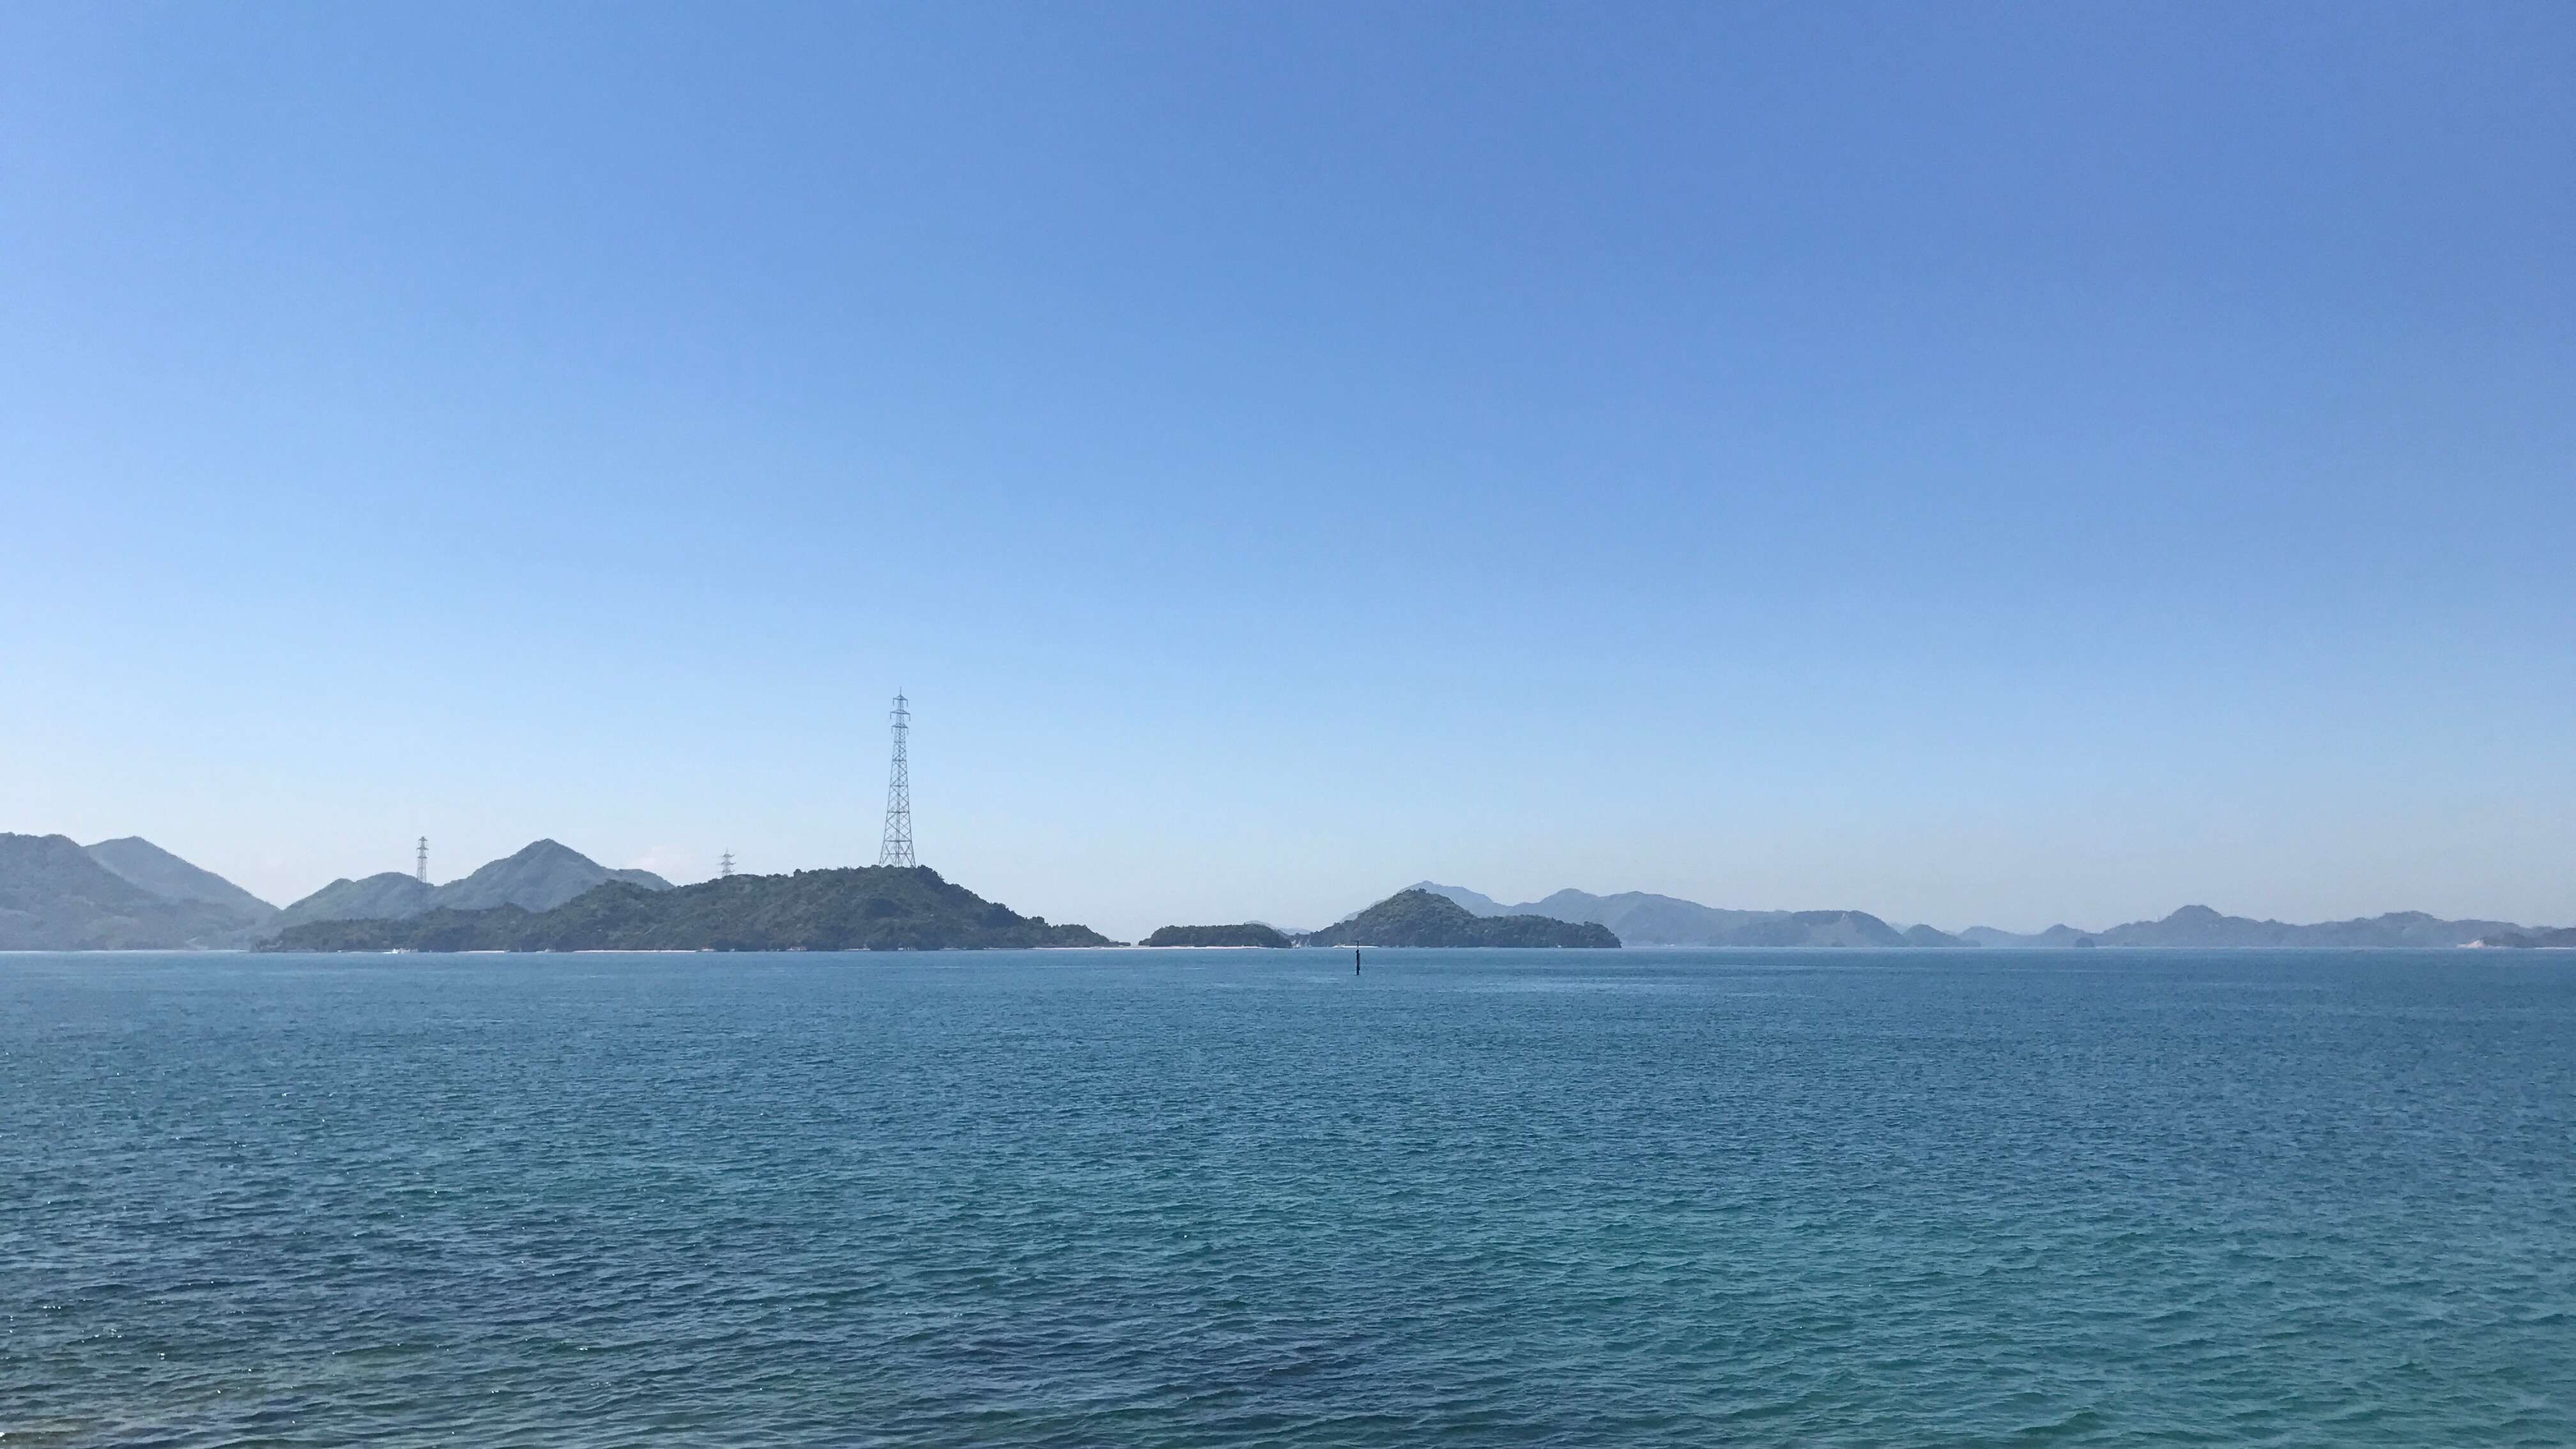 Along the Coast of the Seto Inland Sea